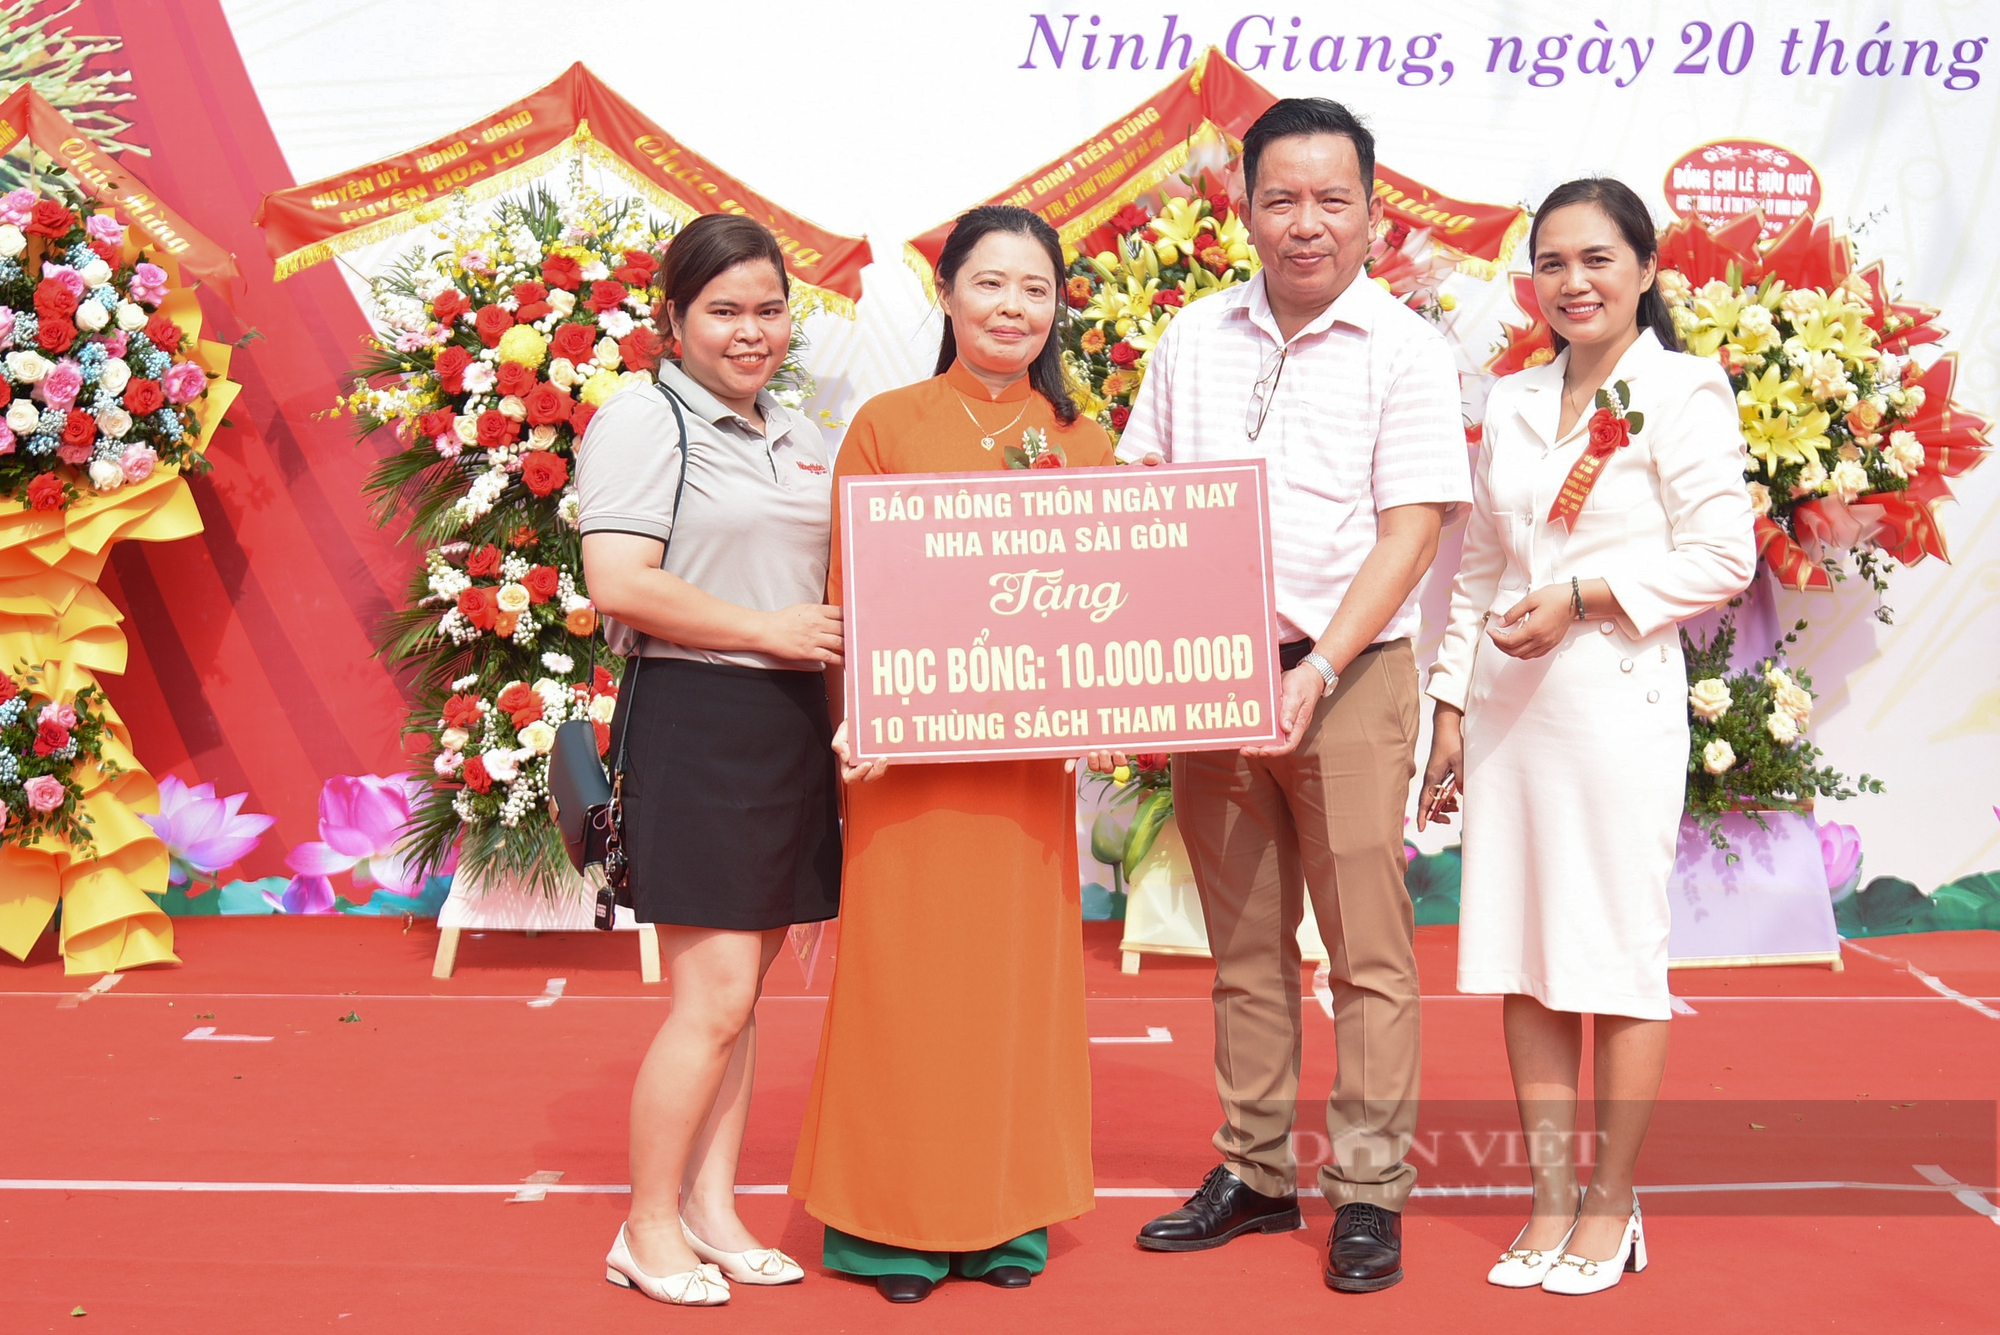 Báo NTNN/Điện tử Dân Việt tặng 10 suất học bổng và 10 tủ sách thư viện cho trường THCS Ninh Giang - Ảnh 2.